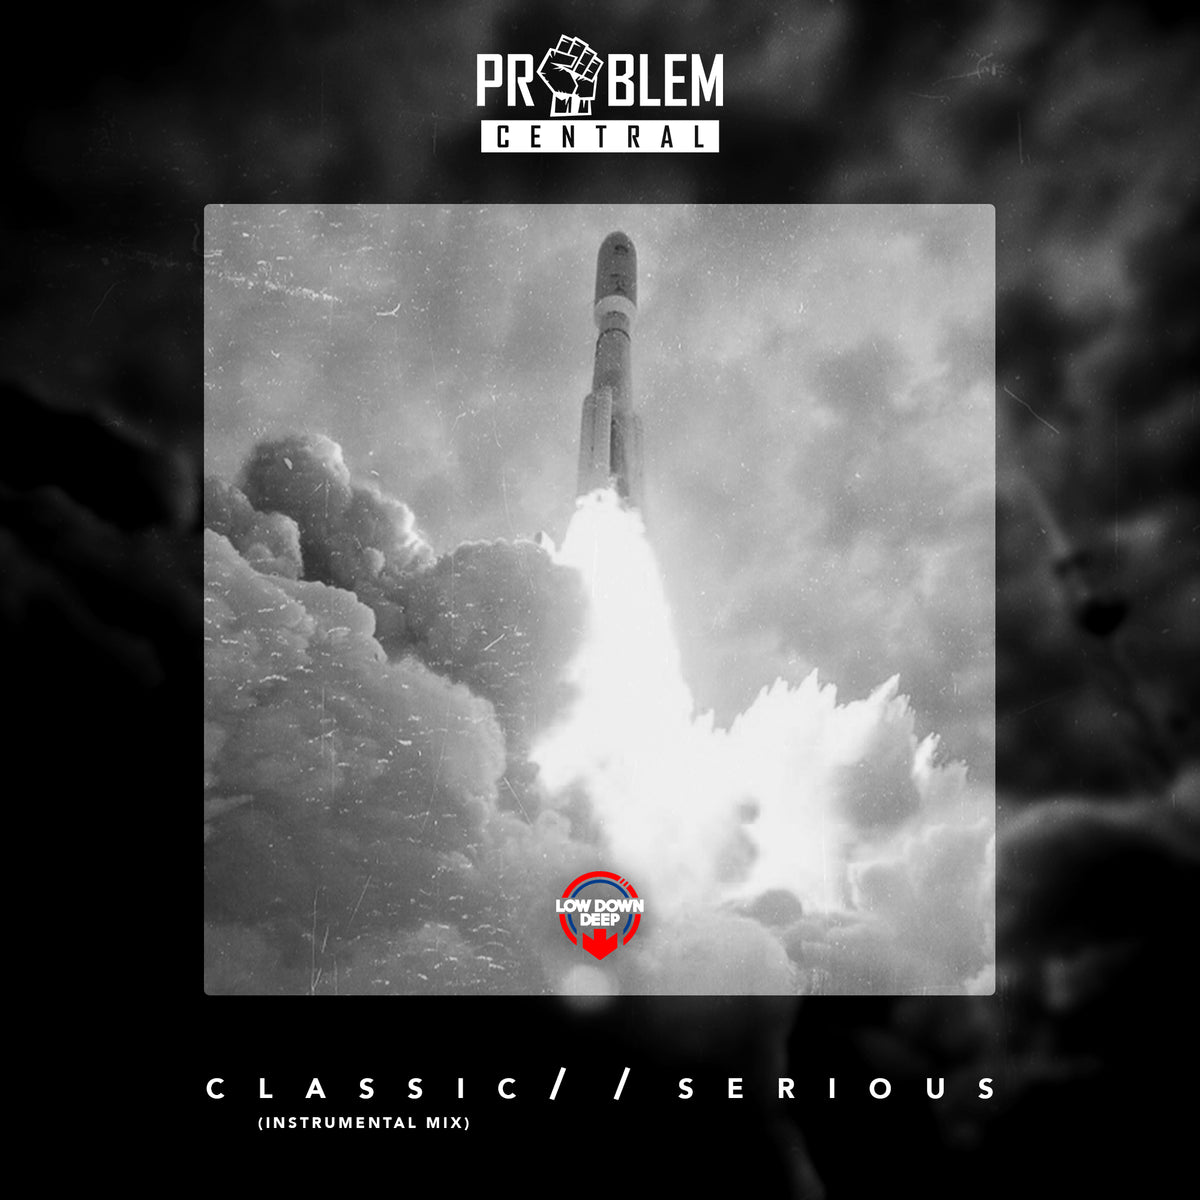 LDD 136 - Problem Central 'Classic' (Dancefloor Mix) | 'Serious'